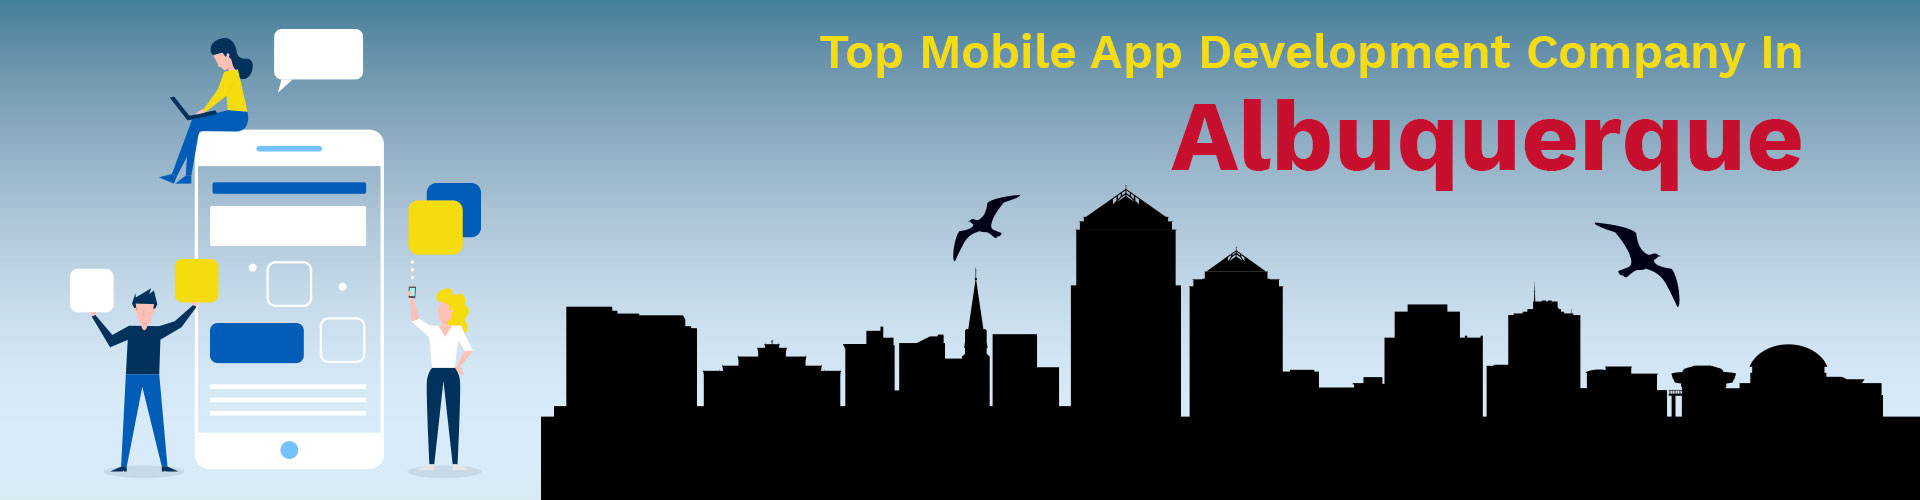 mobile app development company albuquerque